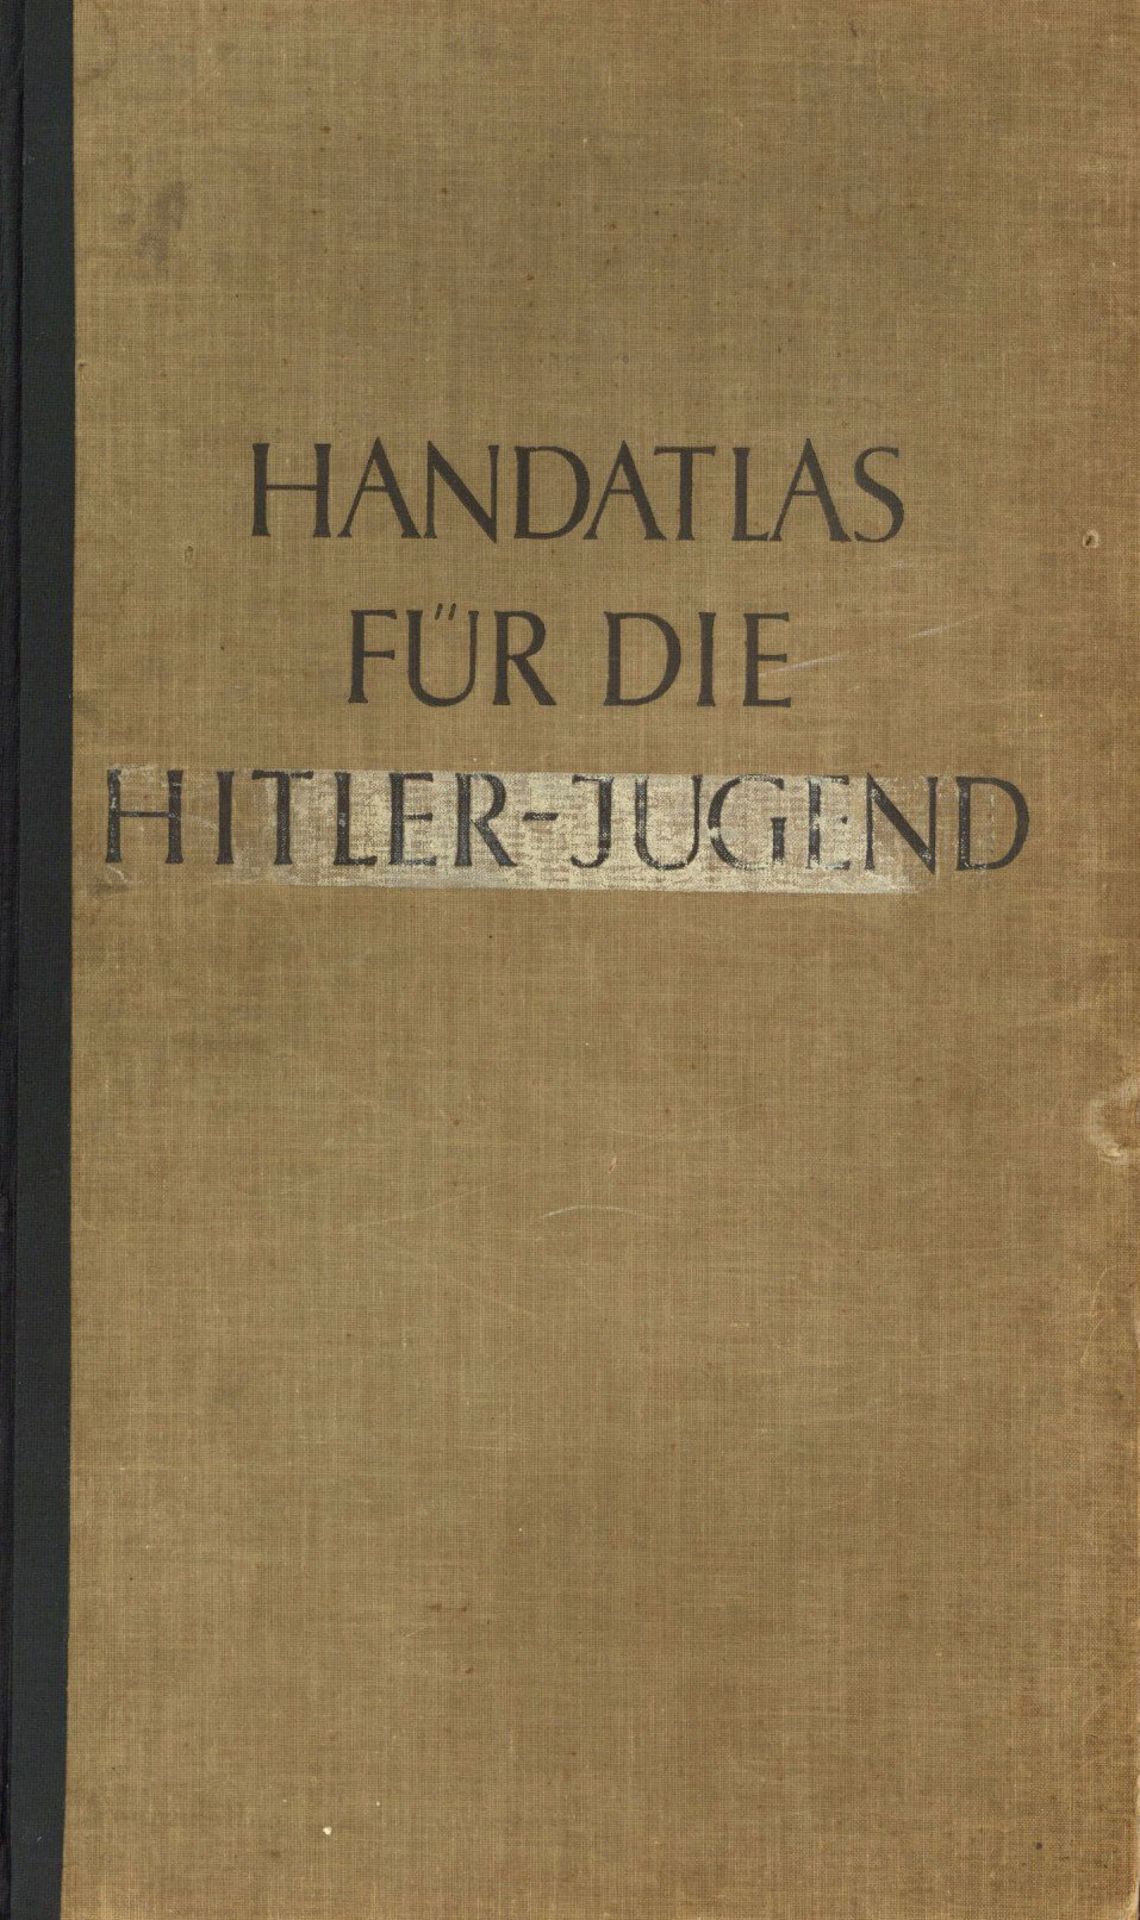 WK II HJ Handatlas der Hitlerjugend von Wagner, K. und Winkel, O. 1939, Verlag Volk und Reich